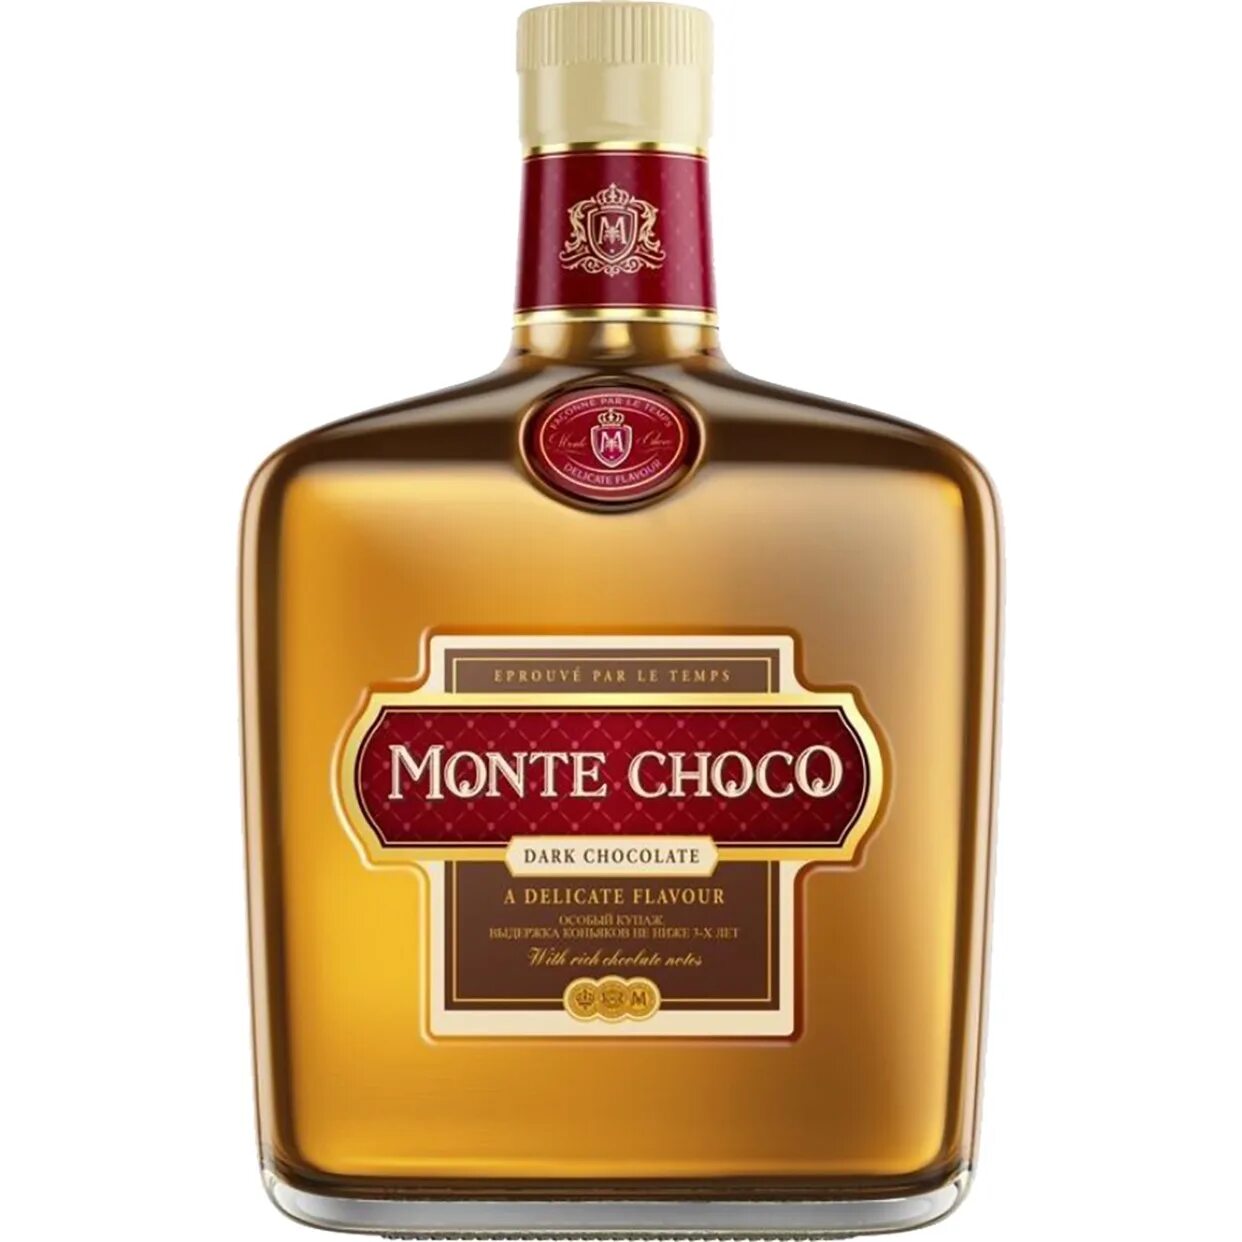 Коктейль монте шоко. Коктейль коньячный Монте шоко. Коньяк Monte Choco 0.5. Монте Чоко дарк шоколад. Monte Choco коньяк 0.5 VSOP.